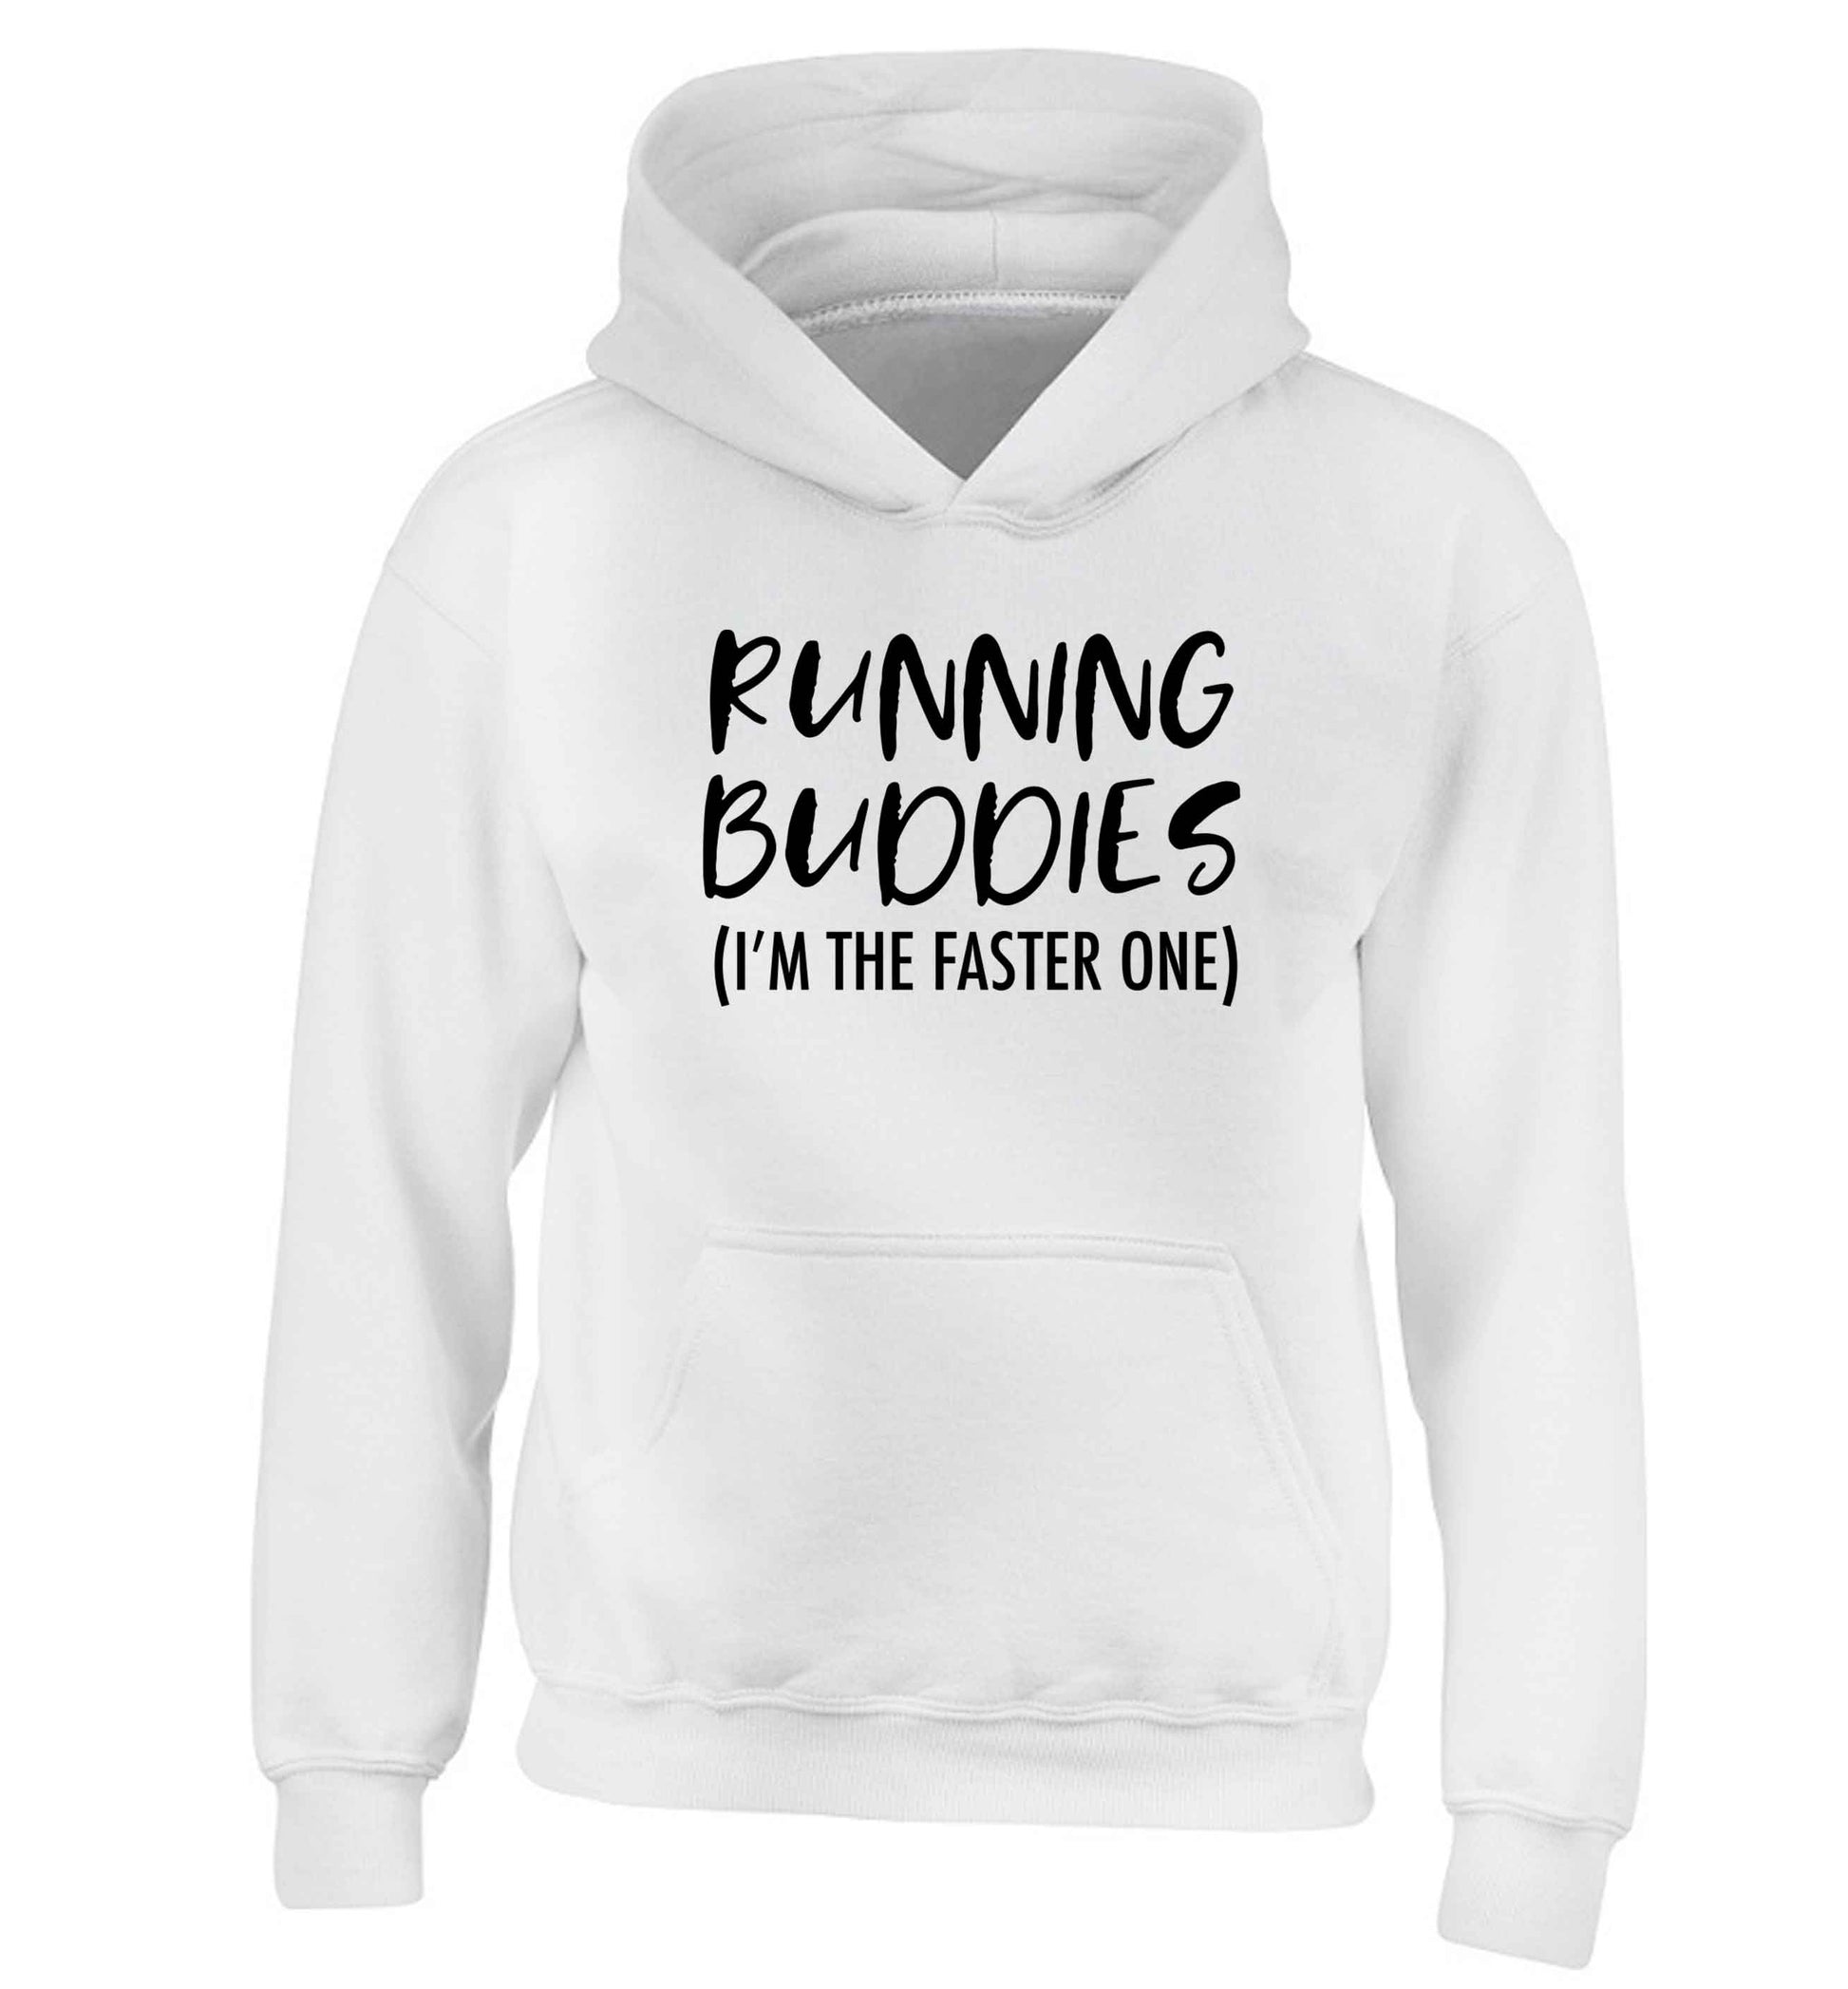 Running buddies (I'm the faster one) children's white hoodie 12-13 Years